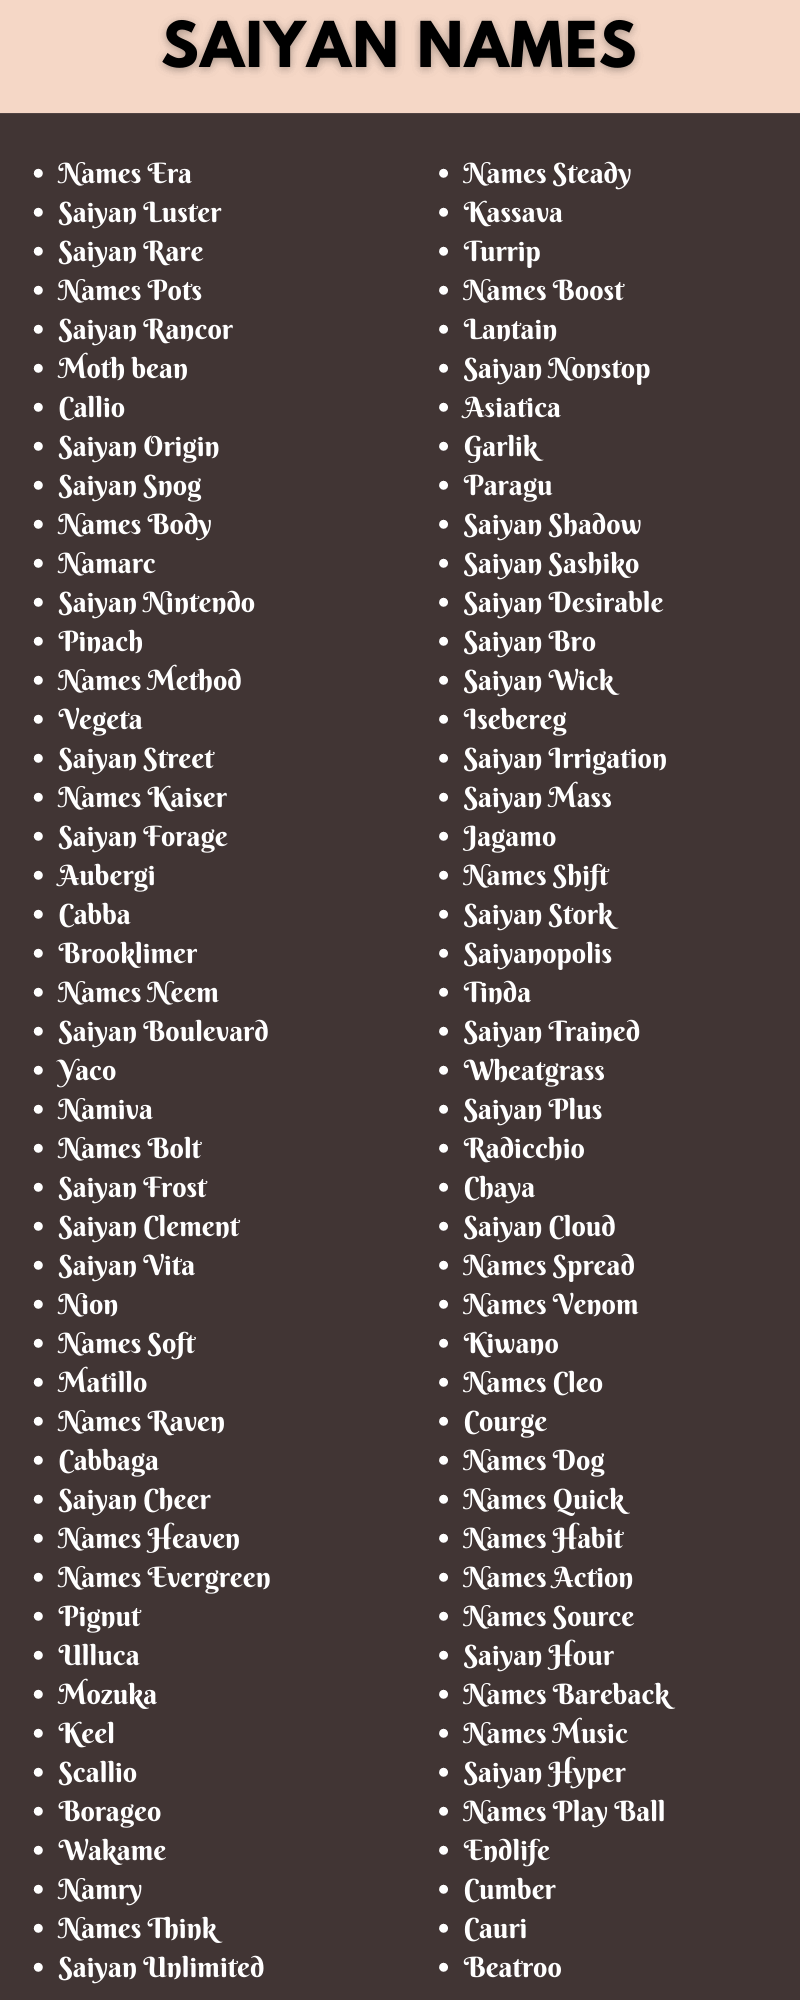 Saiyan Names